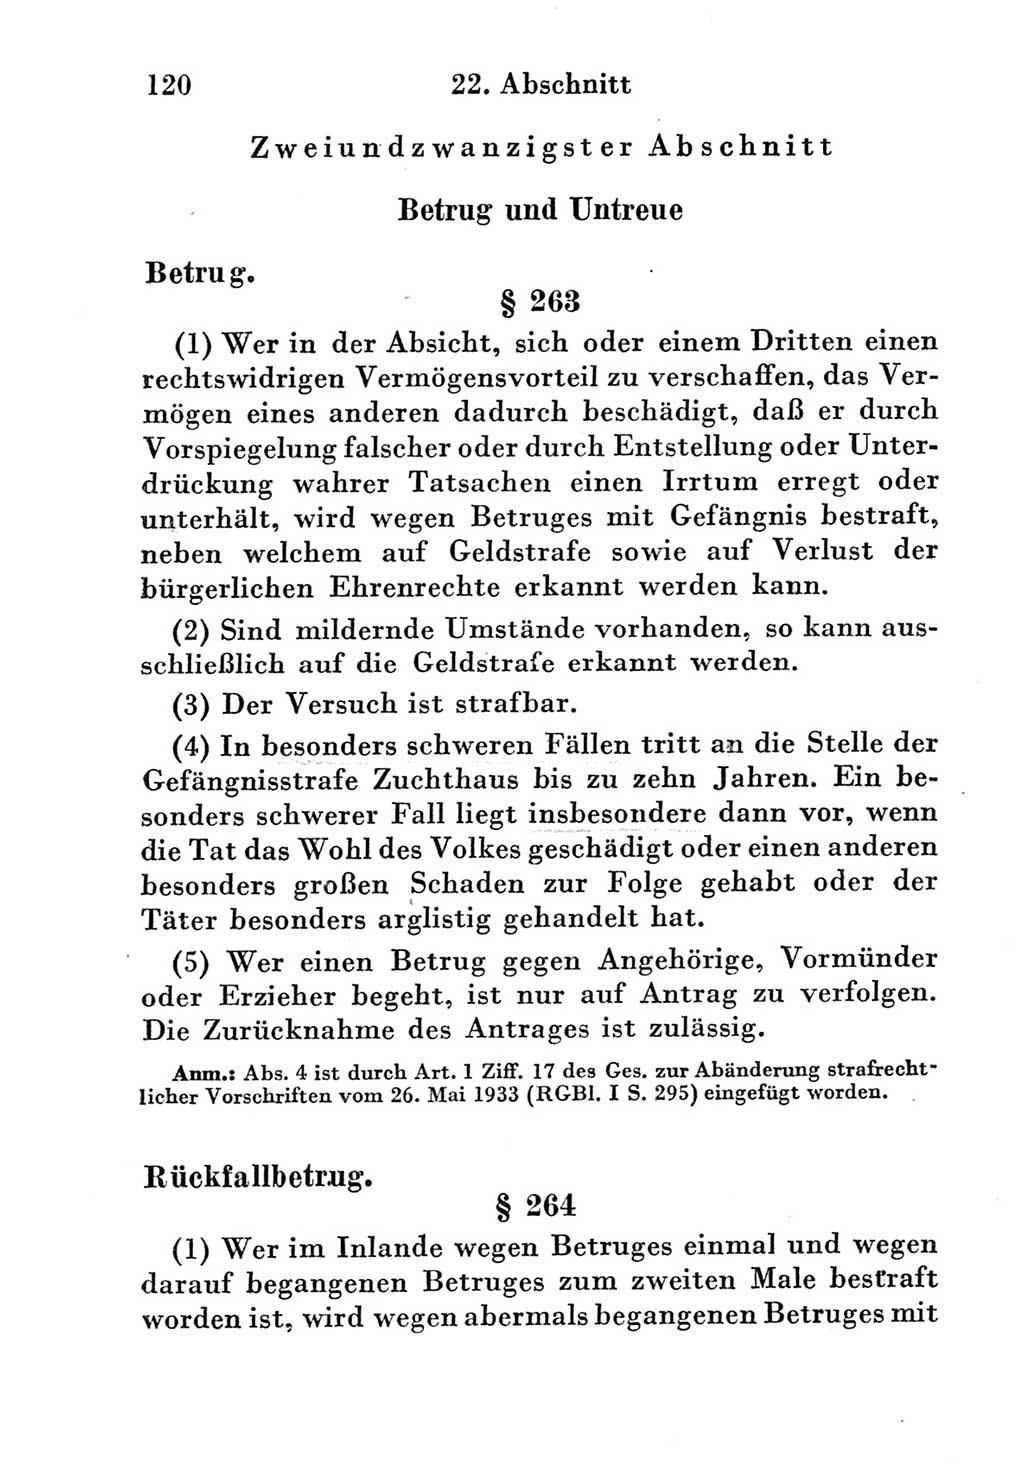 Strafgesetzbuch (StGB) und andere Strafgesetze [Deutsche Demokratische Republik (DDR)] 1951, Seite 120 (StGB Strafges. DDR 1951, S. 120)